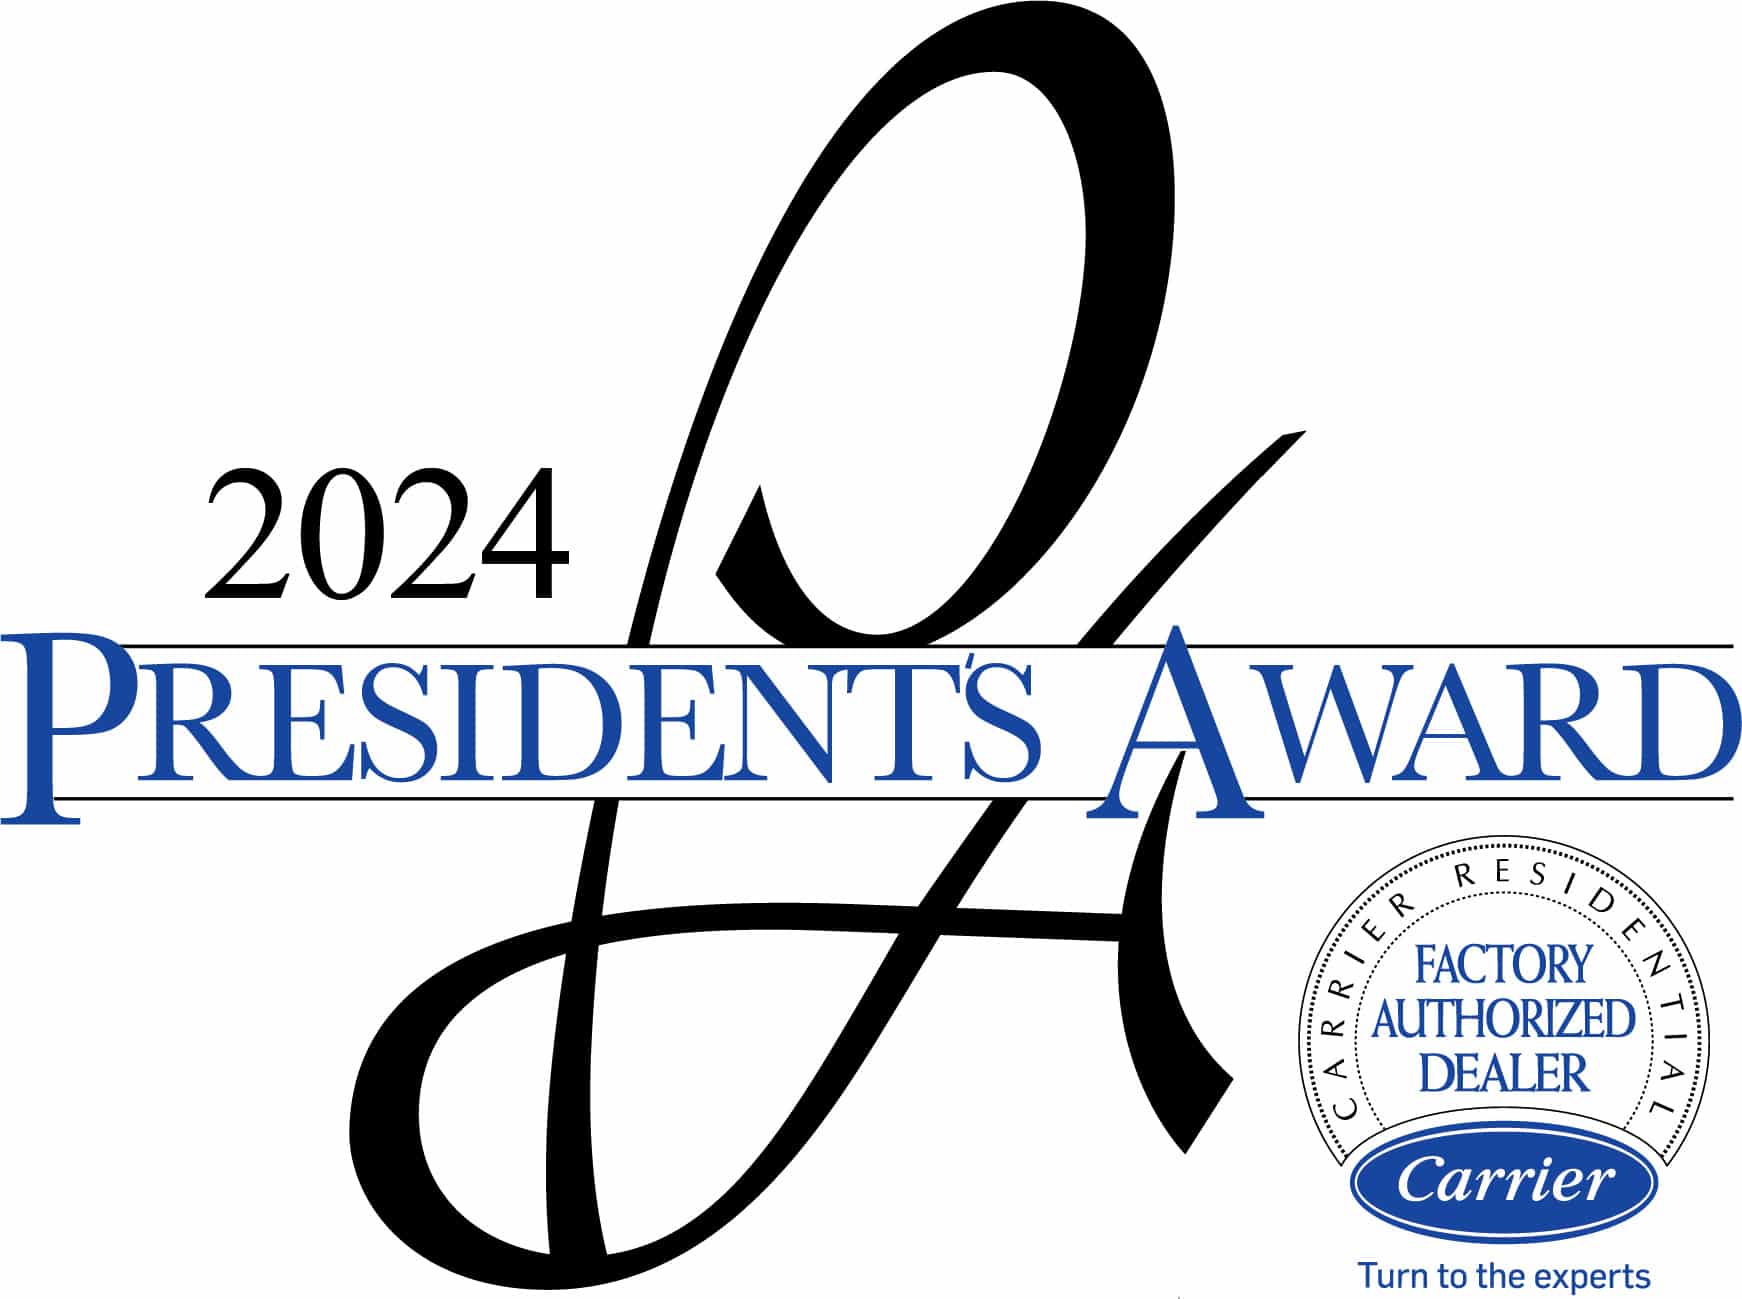 2024 President’s Award from Carrier